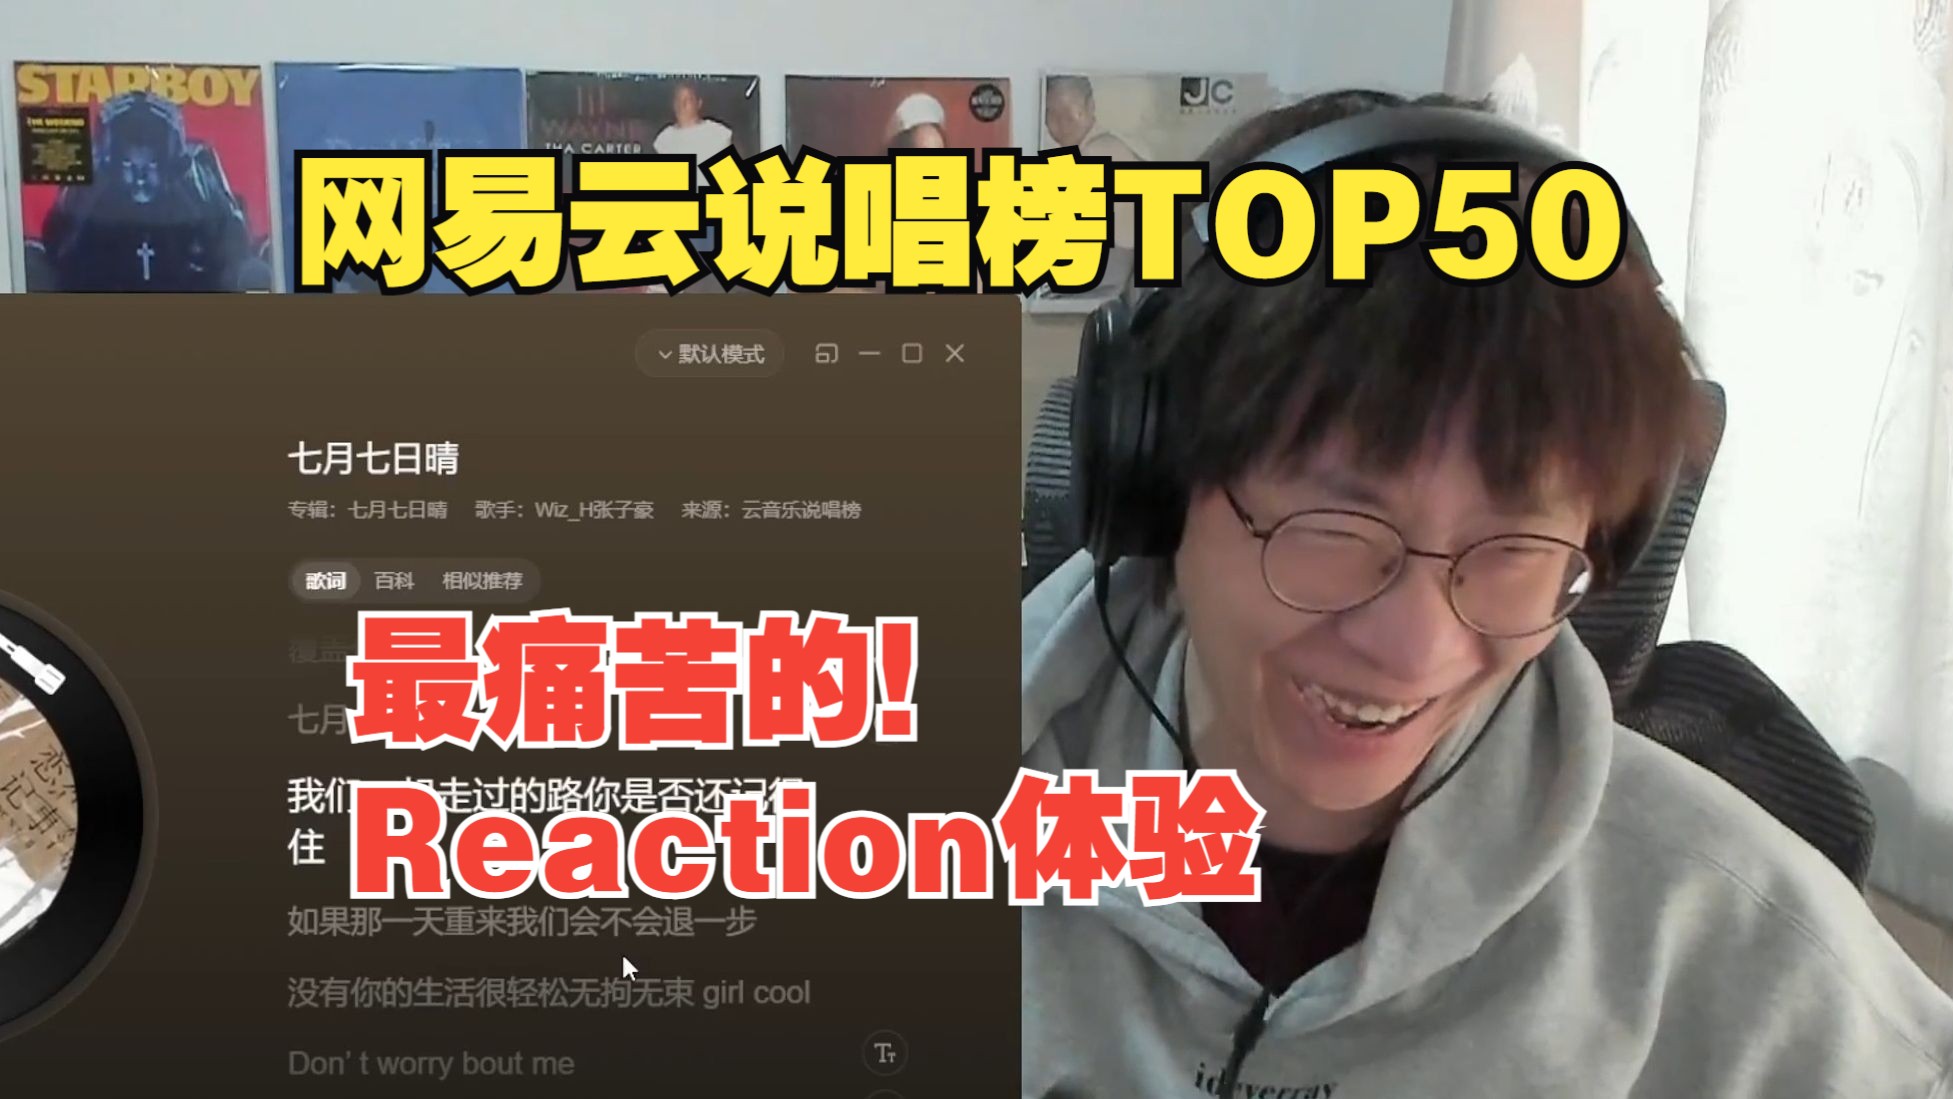 锐评网易云中文说唱TOP50榜单 艾德宝被这些说唱搞麻了【偷活·说唱Reaction】